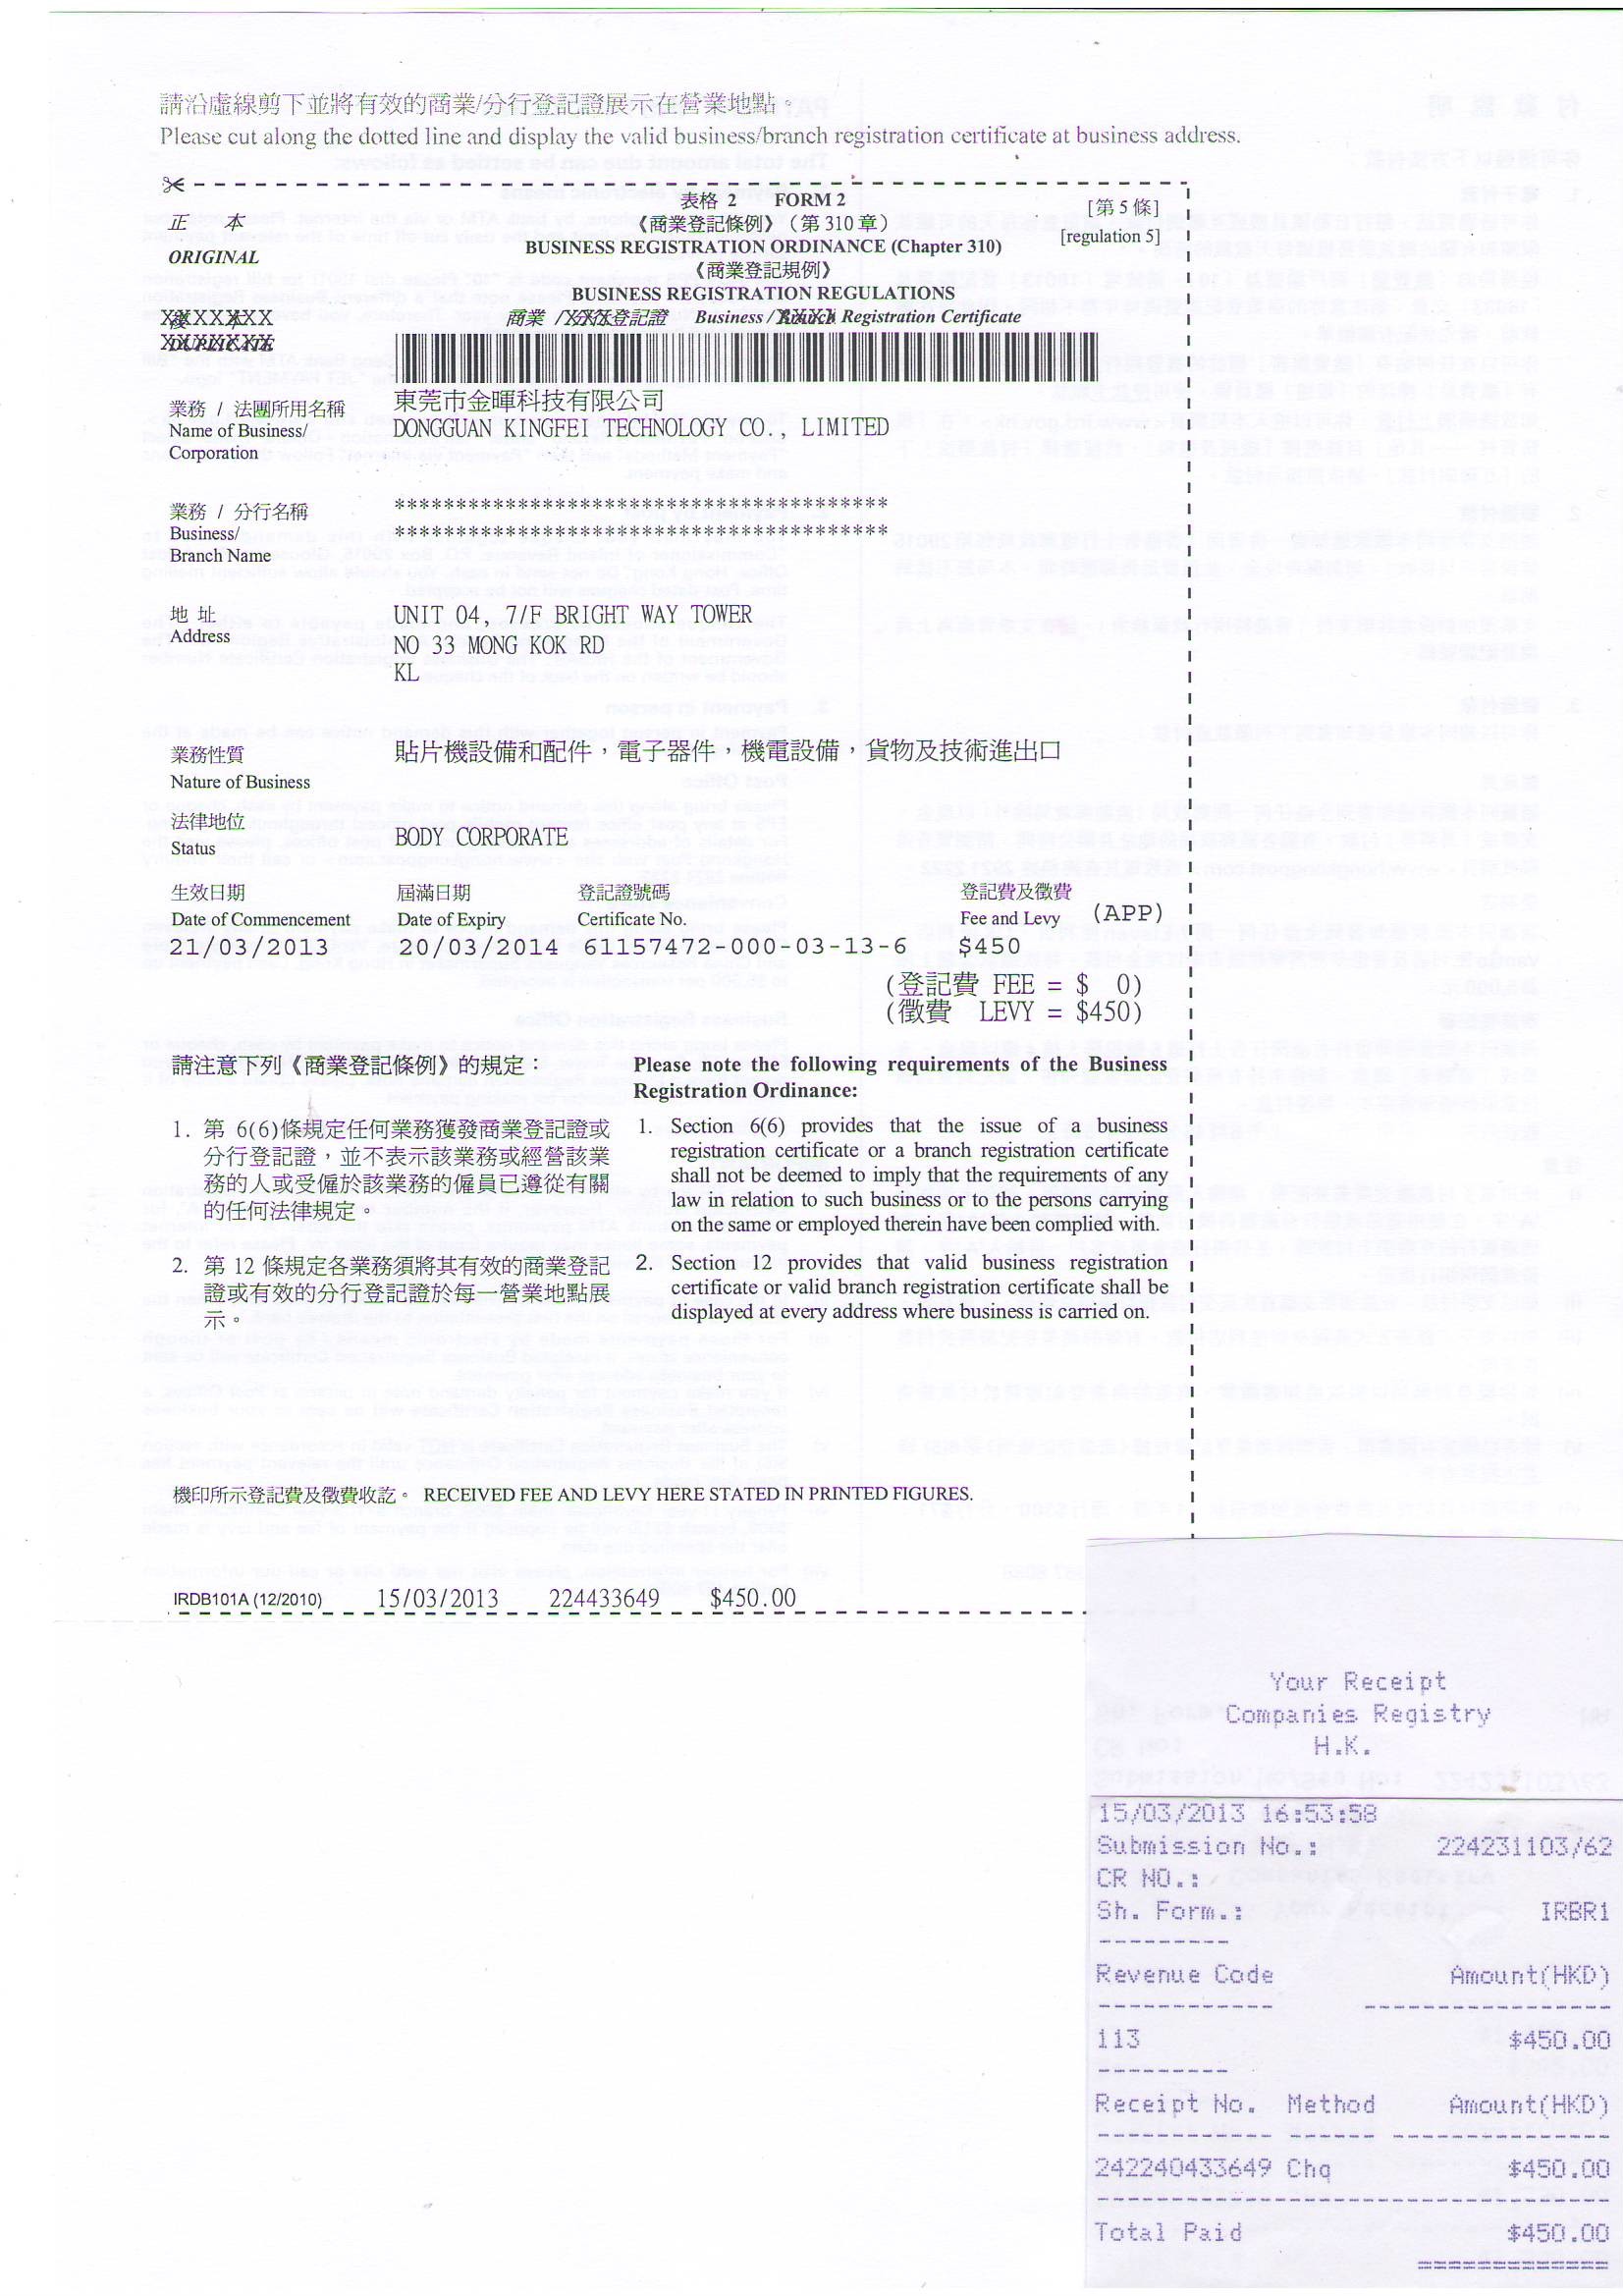 중국 Dongguan Kingfei Technology Co.,Limited 인증